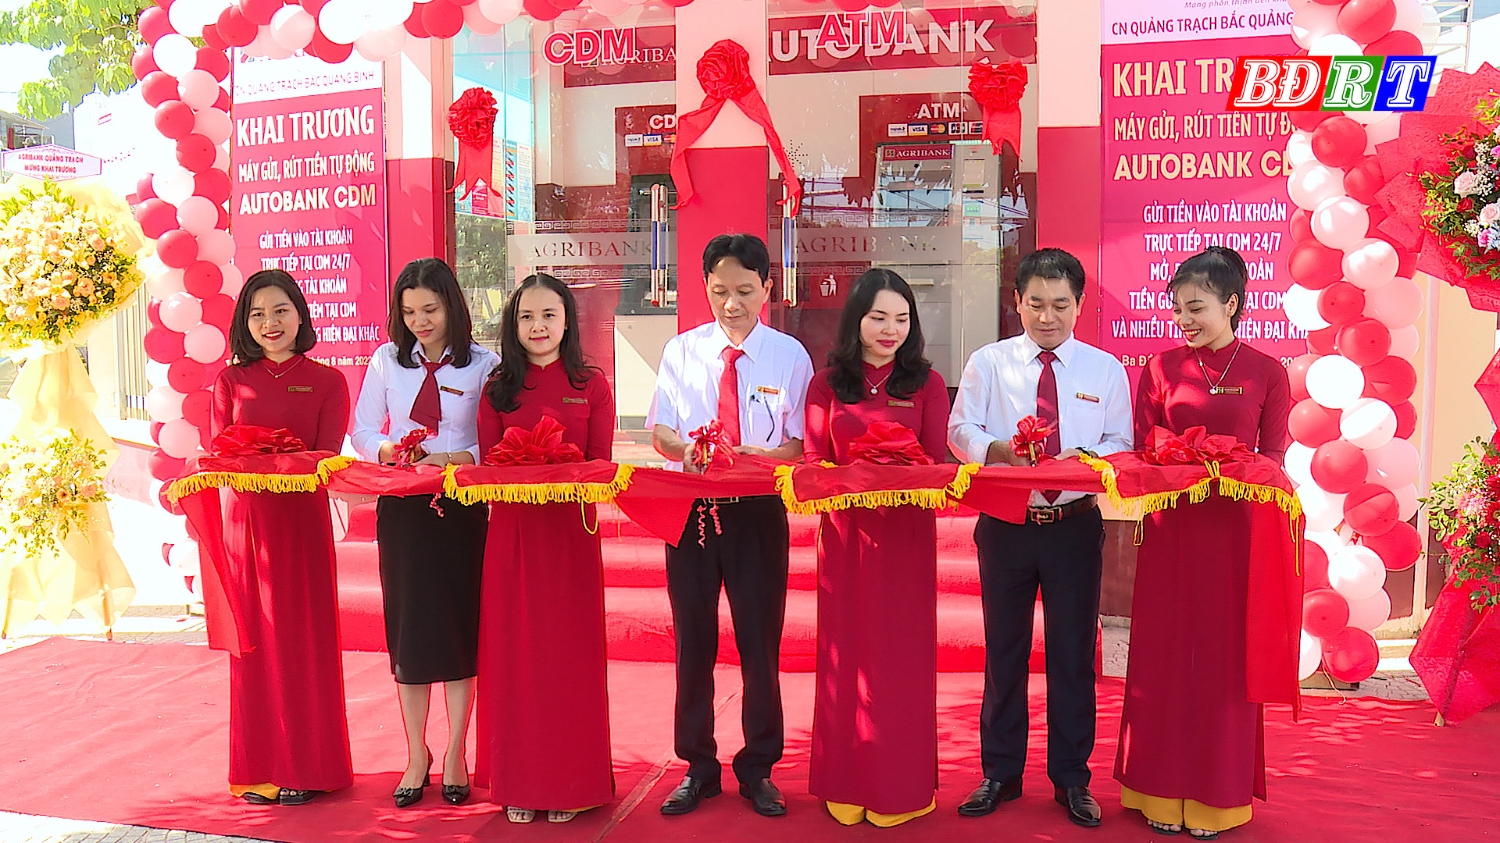 Agribank chi nhánh Quảng Trạch- Bắc Quảng Bình cắt băng khai trương máy gửi, rút tiền tự động Autobank CDM.